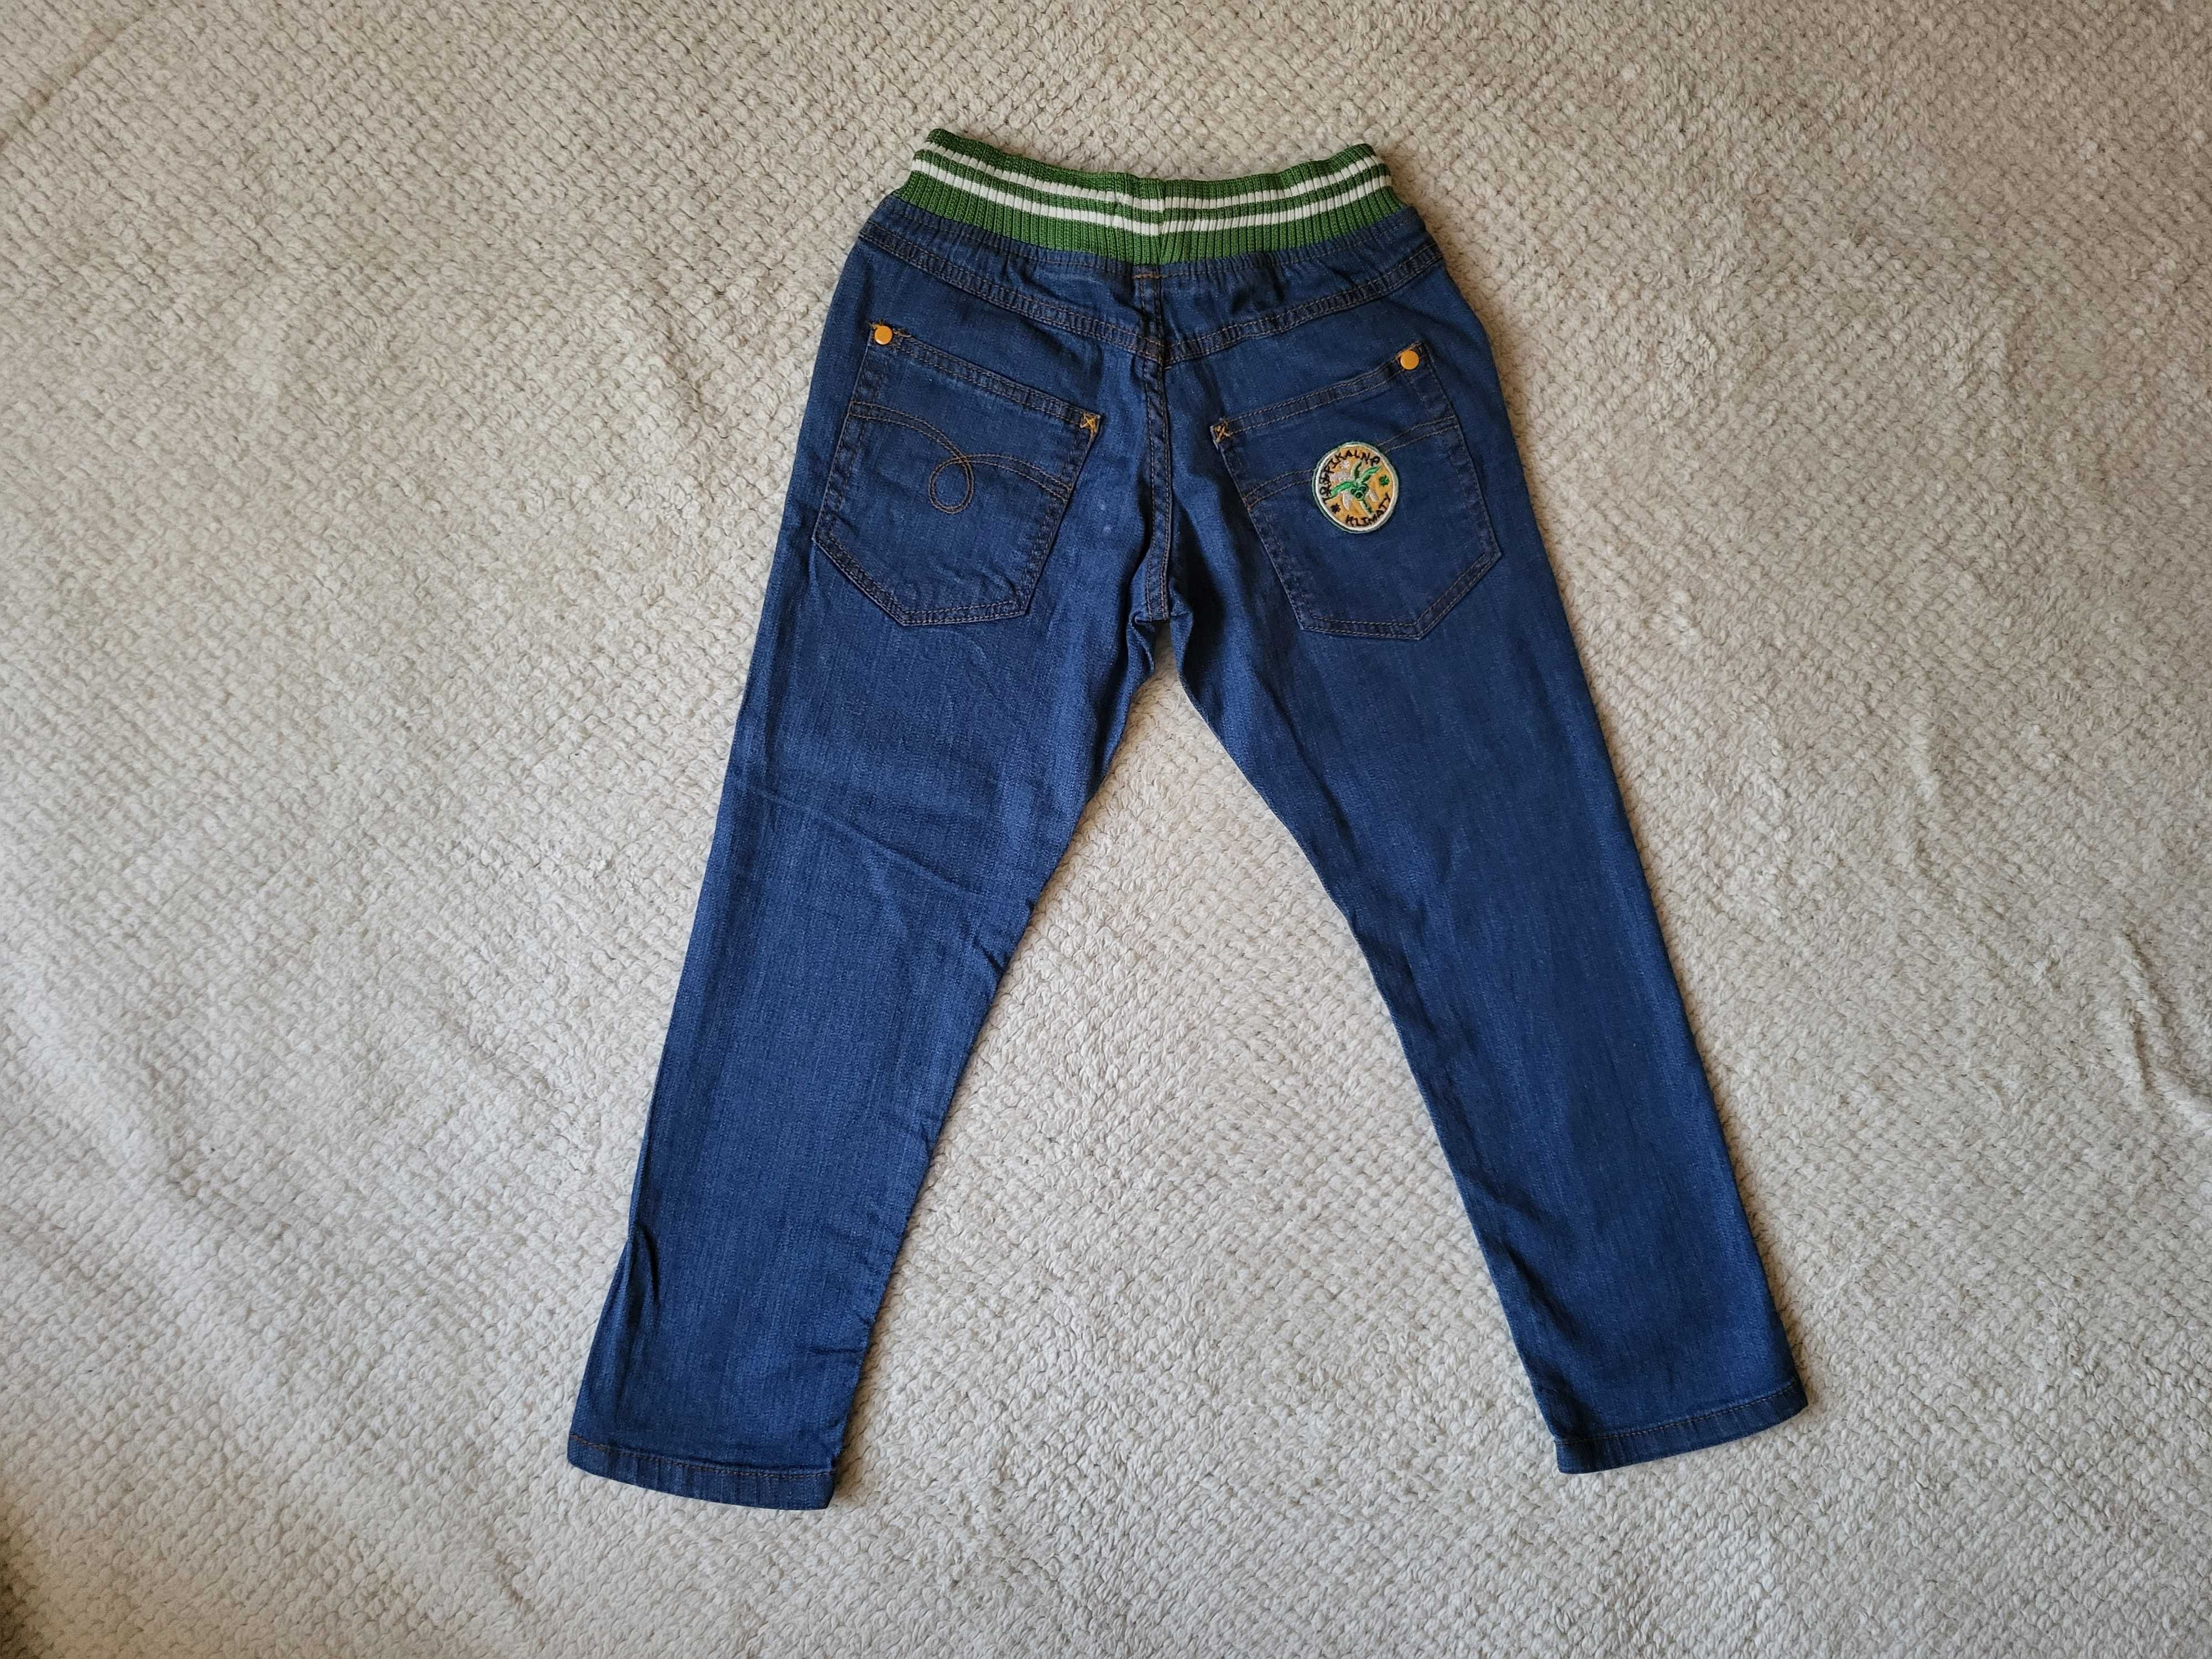 Spodnie chłopięce jeansowe 5.10.15, r. 116